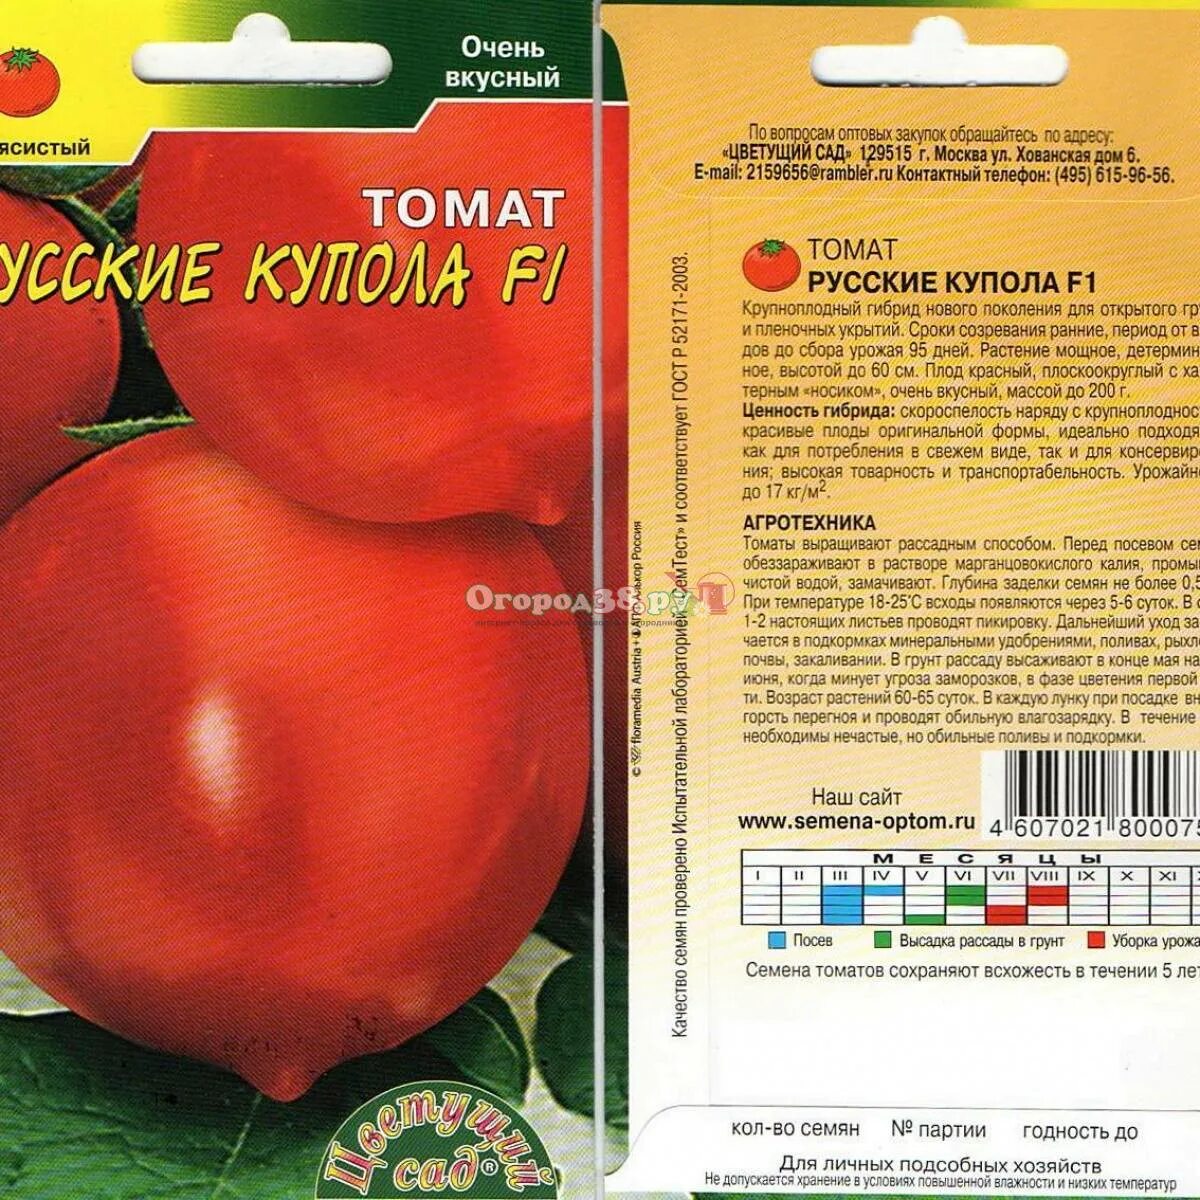 Семена томат русские купола f1. Томат малиновые купола f1. Томат красный купол f1. Томат Обские купола характеристика. Урожайность томата золотые купола